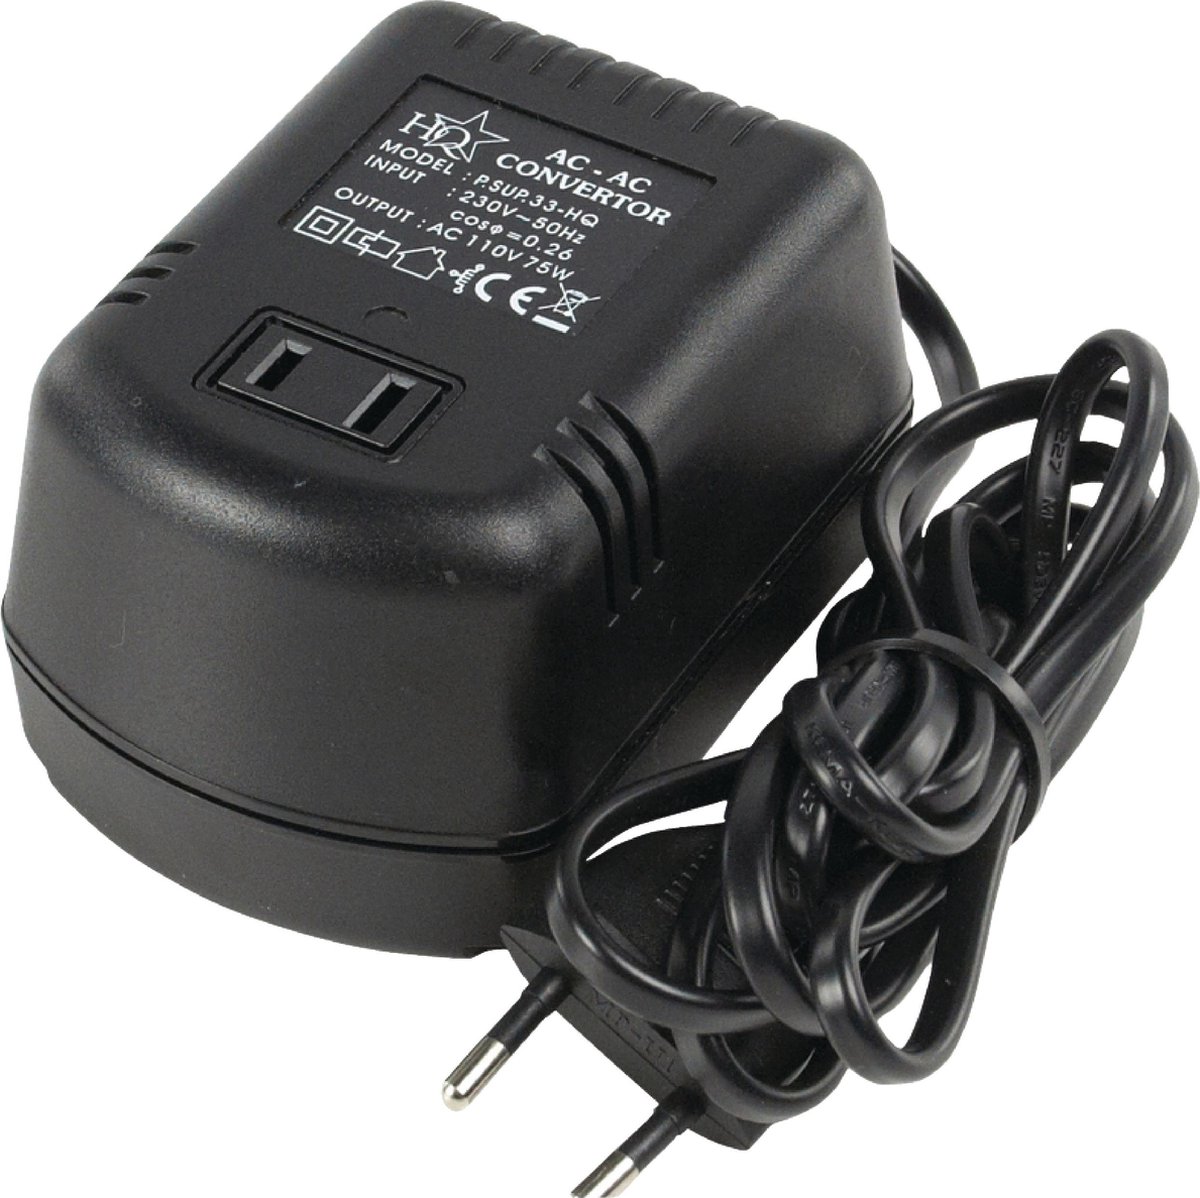 Tussendoortje passend nauwkeurig HQ - Spanningsomvormer - 230 - 100 volt | bol.com